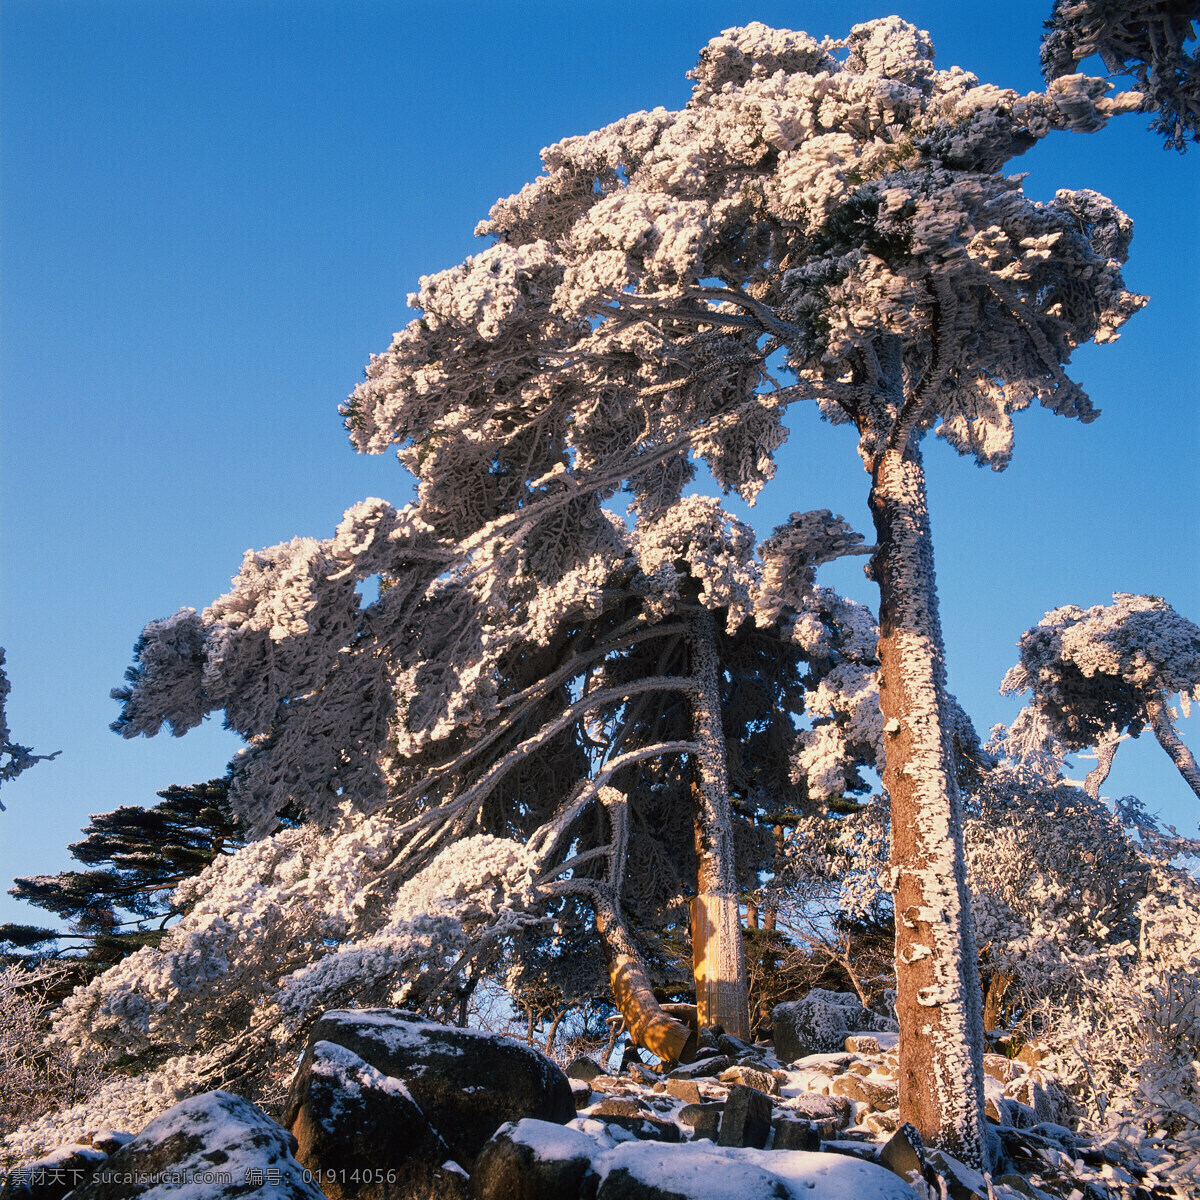 冬天雪景摄影 大自然 自然风景 美丽风景 美景 景色 风景摄影 旅游景区 旅游风景 旅游奇观 迎客松 雪景 冬天树木 自然景观 黑色